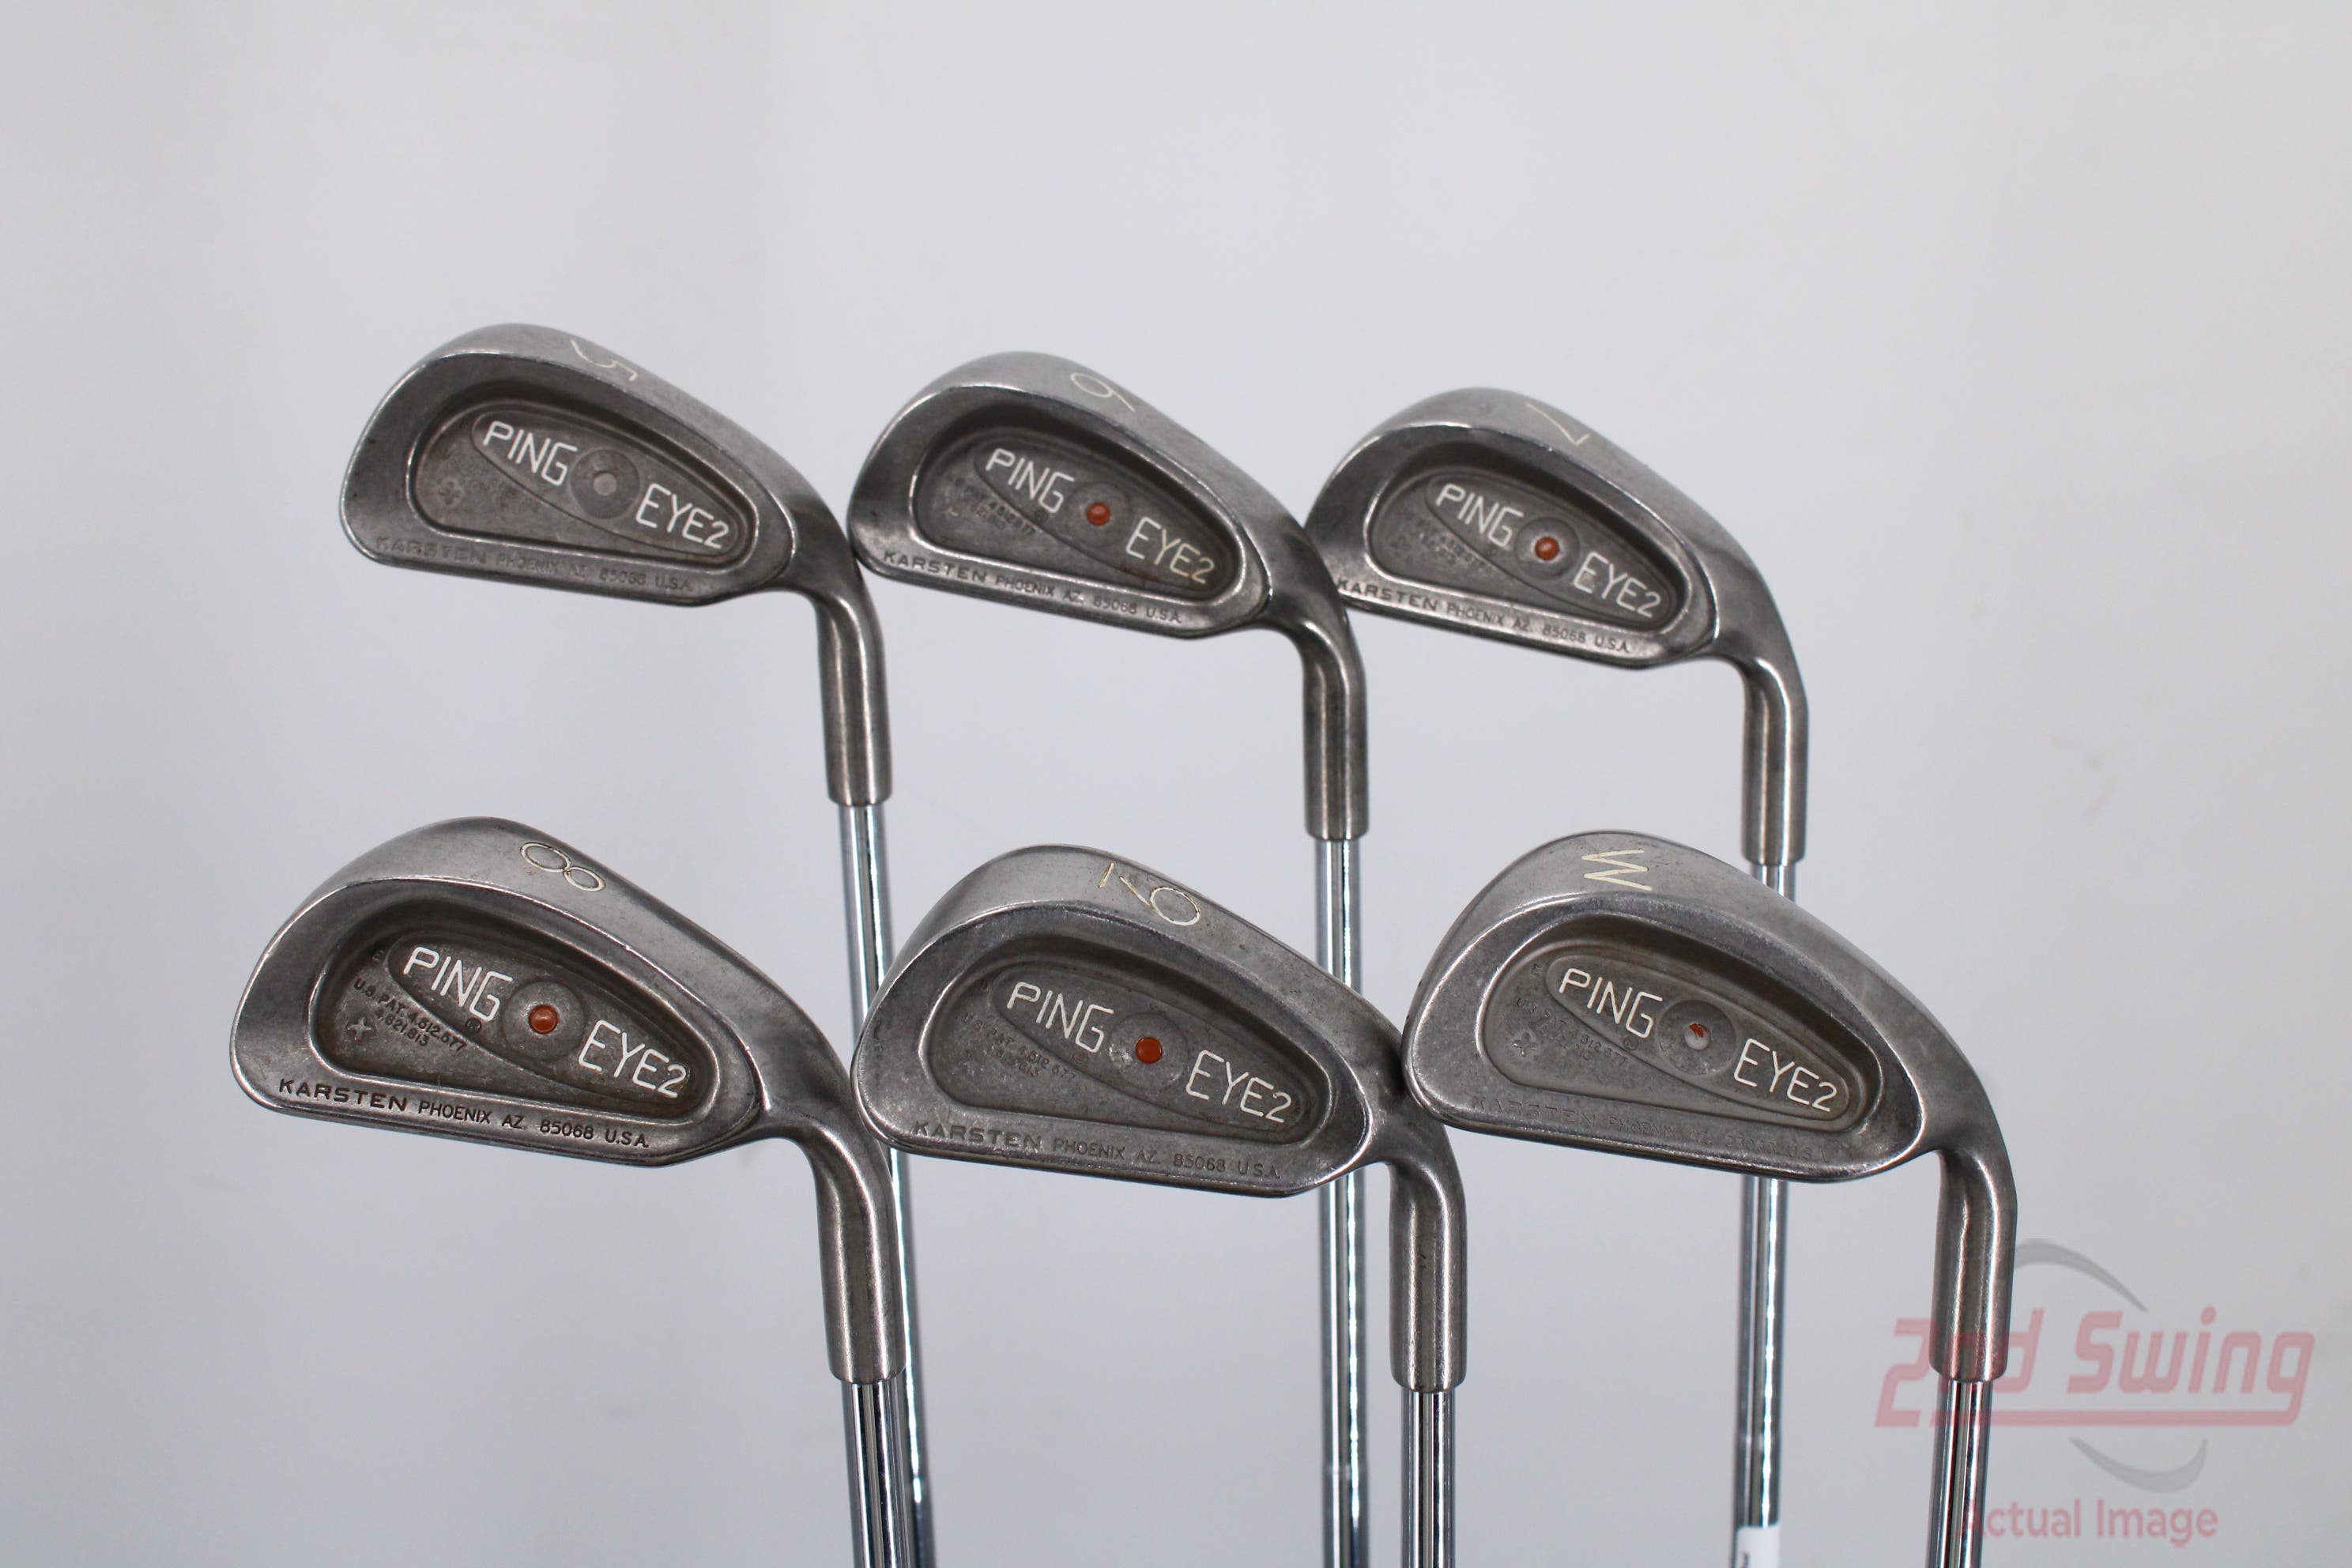 Ping Eye 2 + Iron Set (D-N2227181860) | 2nd Swing Golf